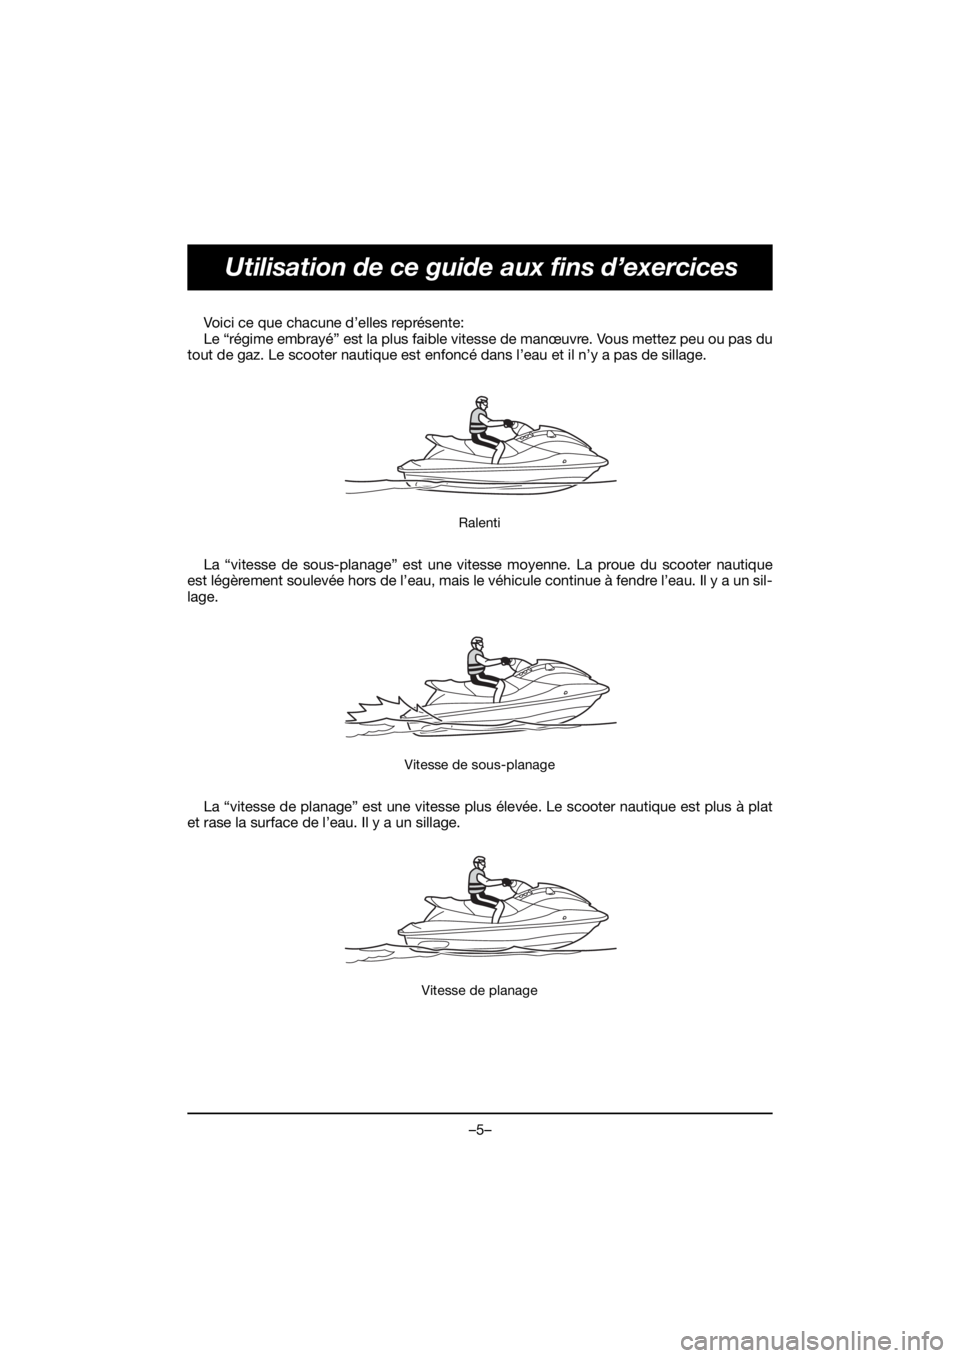 YAMAHA EX 2020  Manual de utilização (in Portuguese) –5–
Utilisation de ce guide aux fins d’exercices
Voici ce que chacune d’elles représente: 
Le “régime embrayé” est la plus faible vitesse de manœuvre. Vous mettez peu ou pas du
tout de